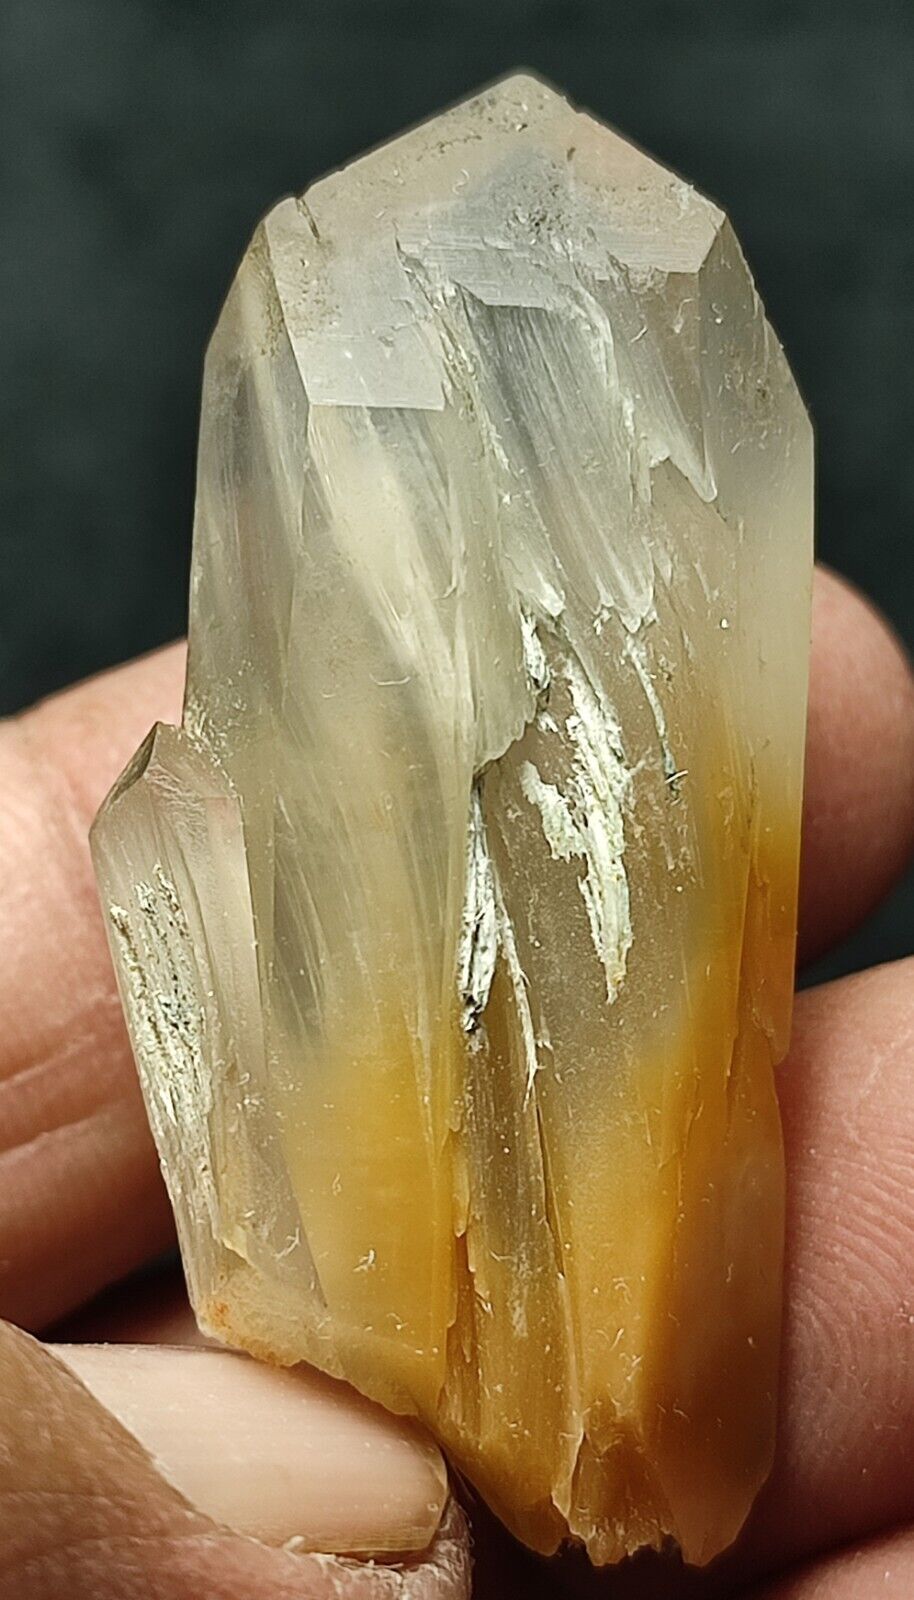 Amphibole quartz nice terminated crystals.